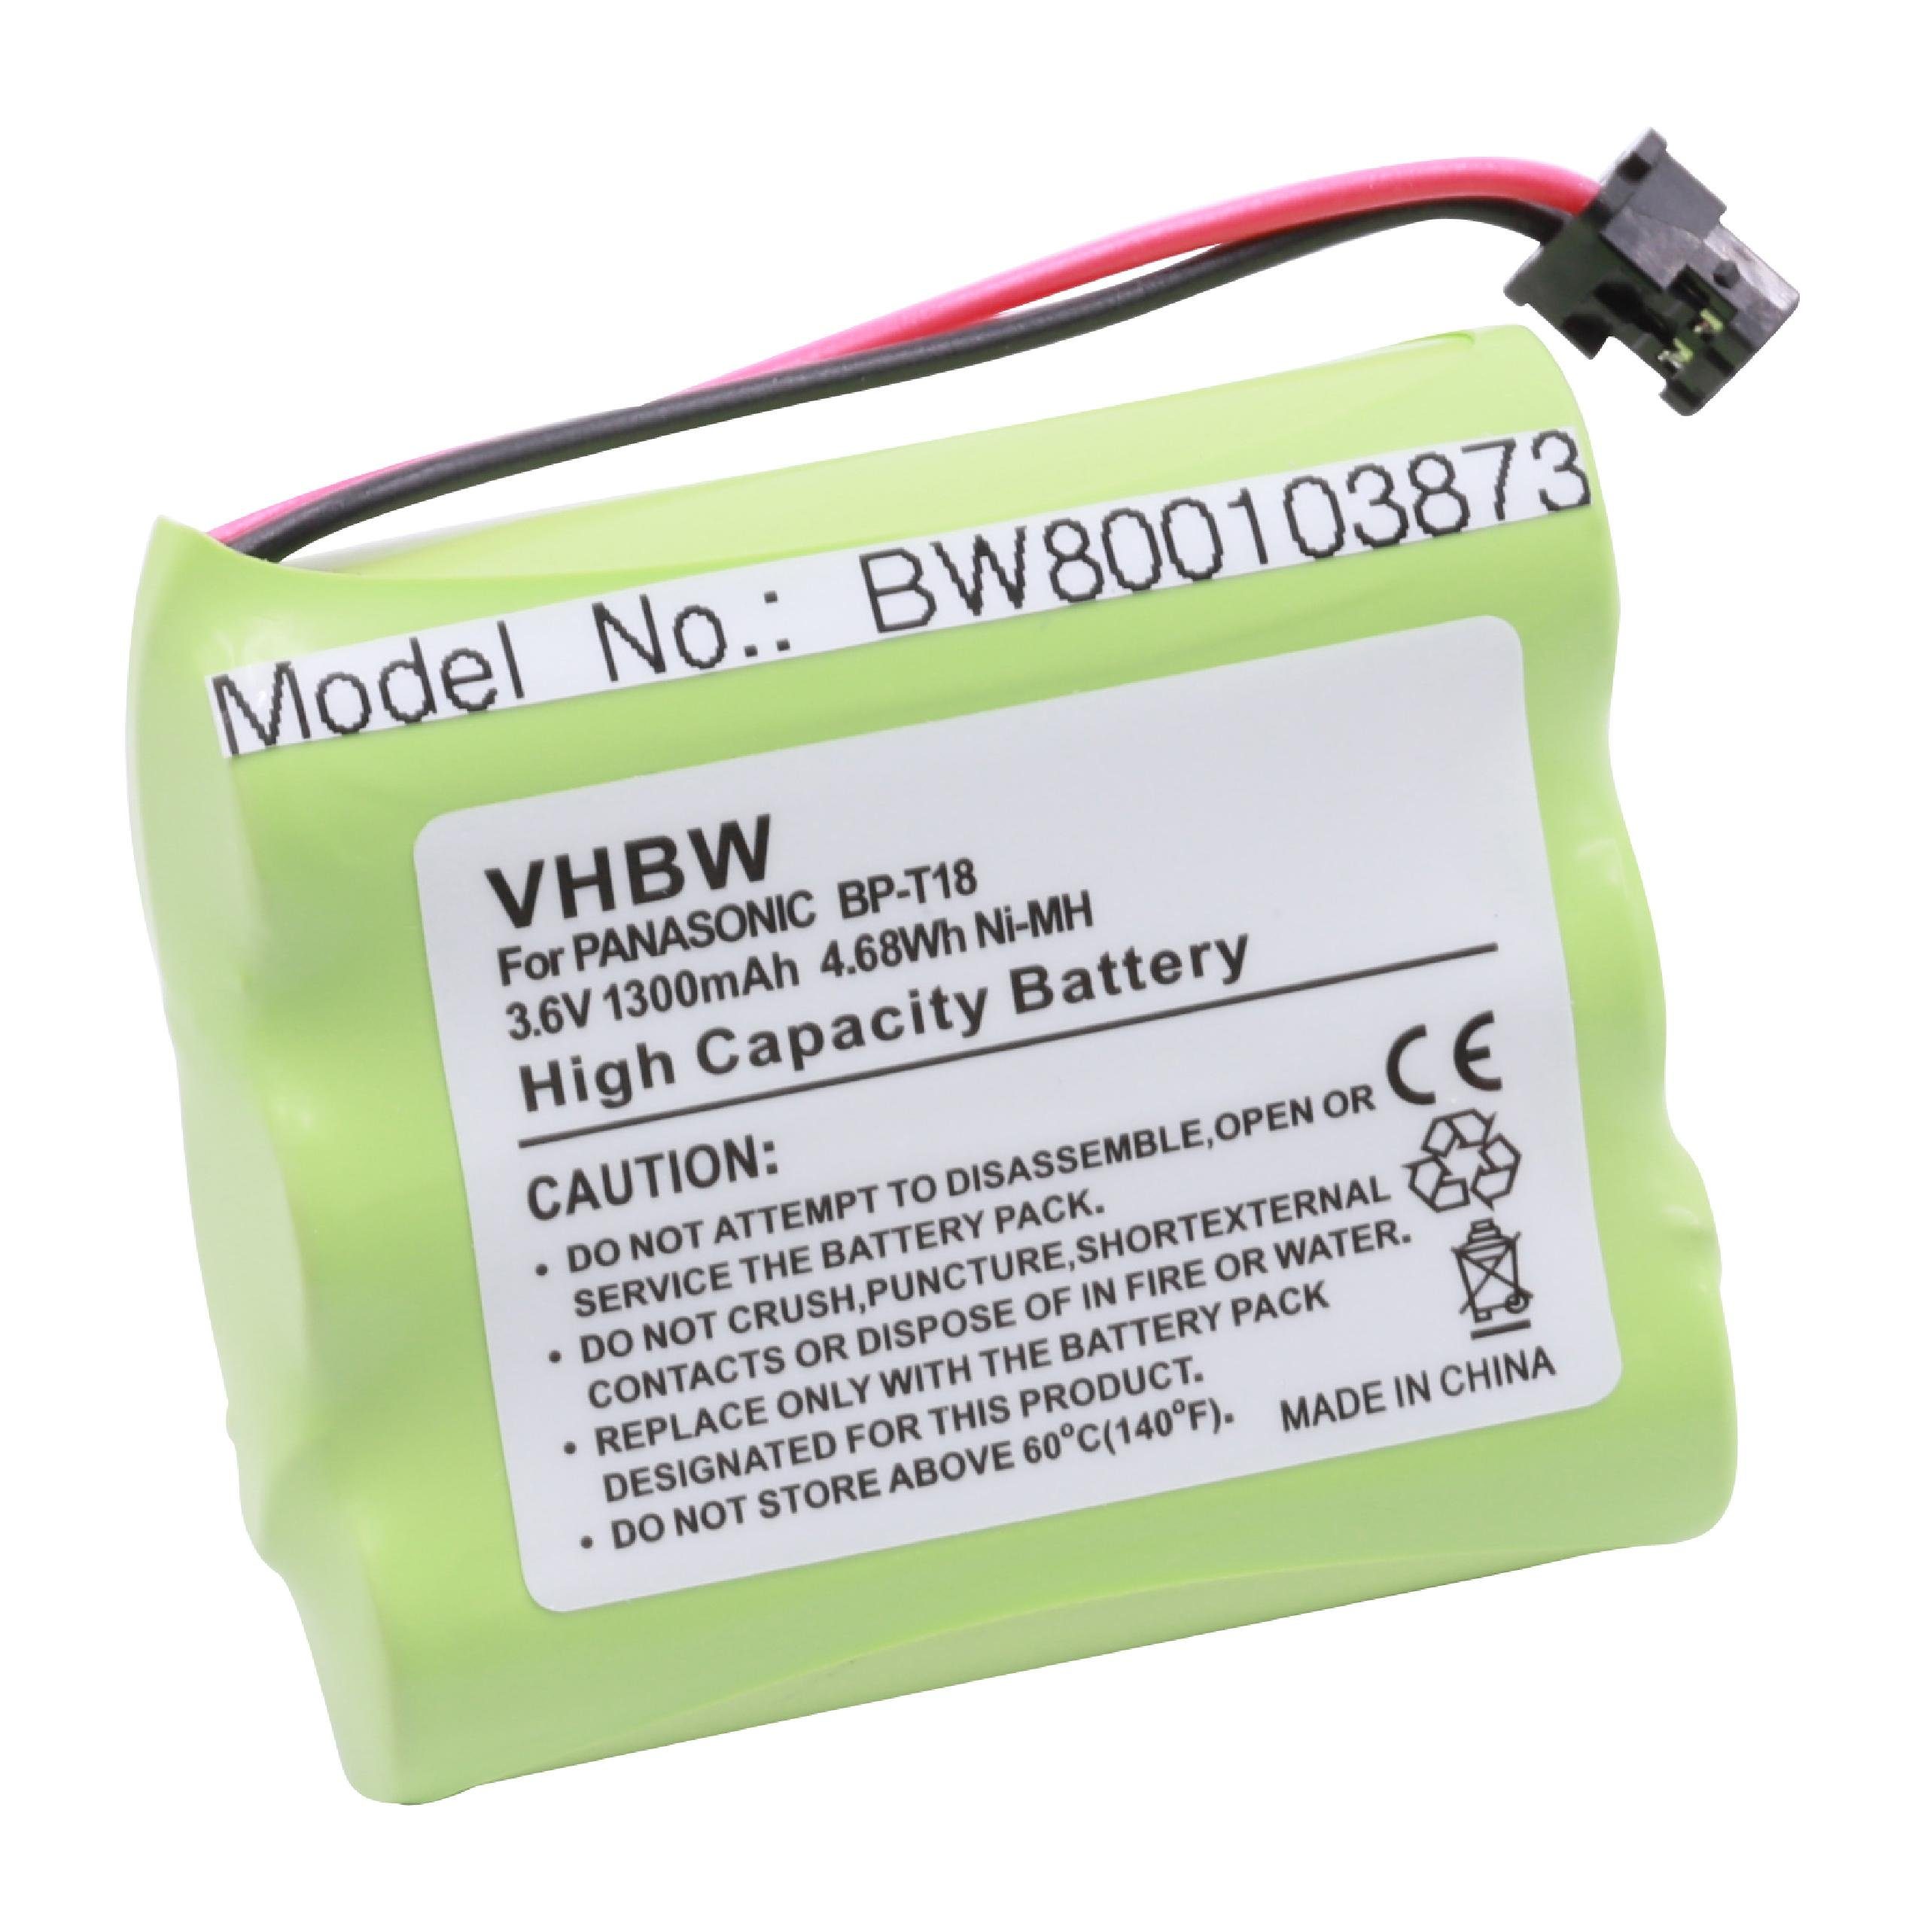 vhbw kompatibel mit CP-1218 mAh (3,6 NiMH Casio 1300 V) Akku